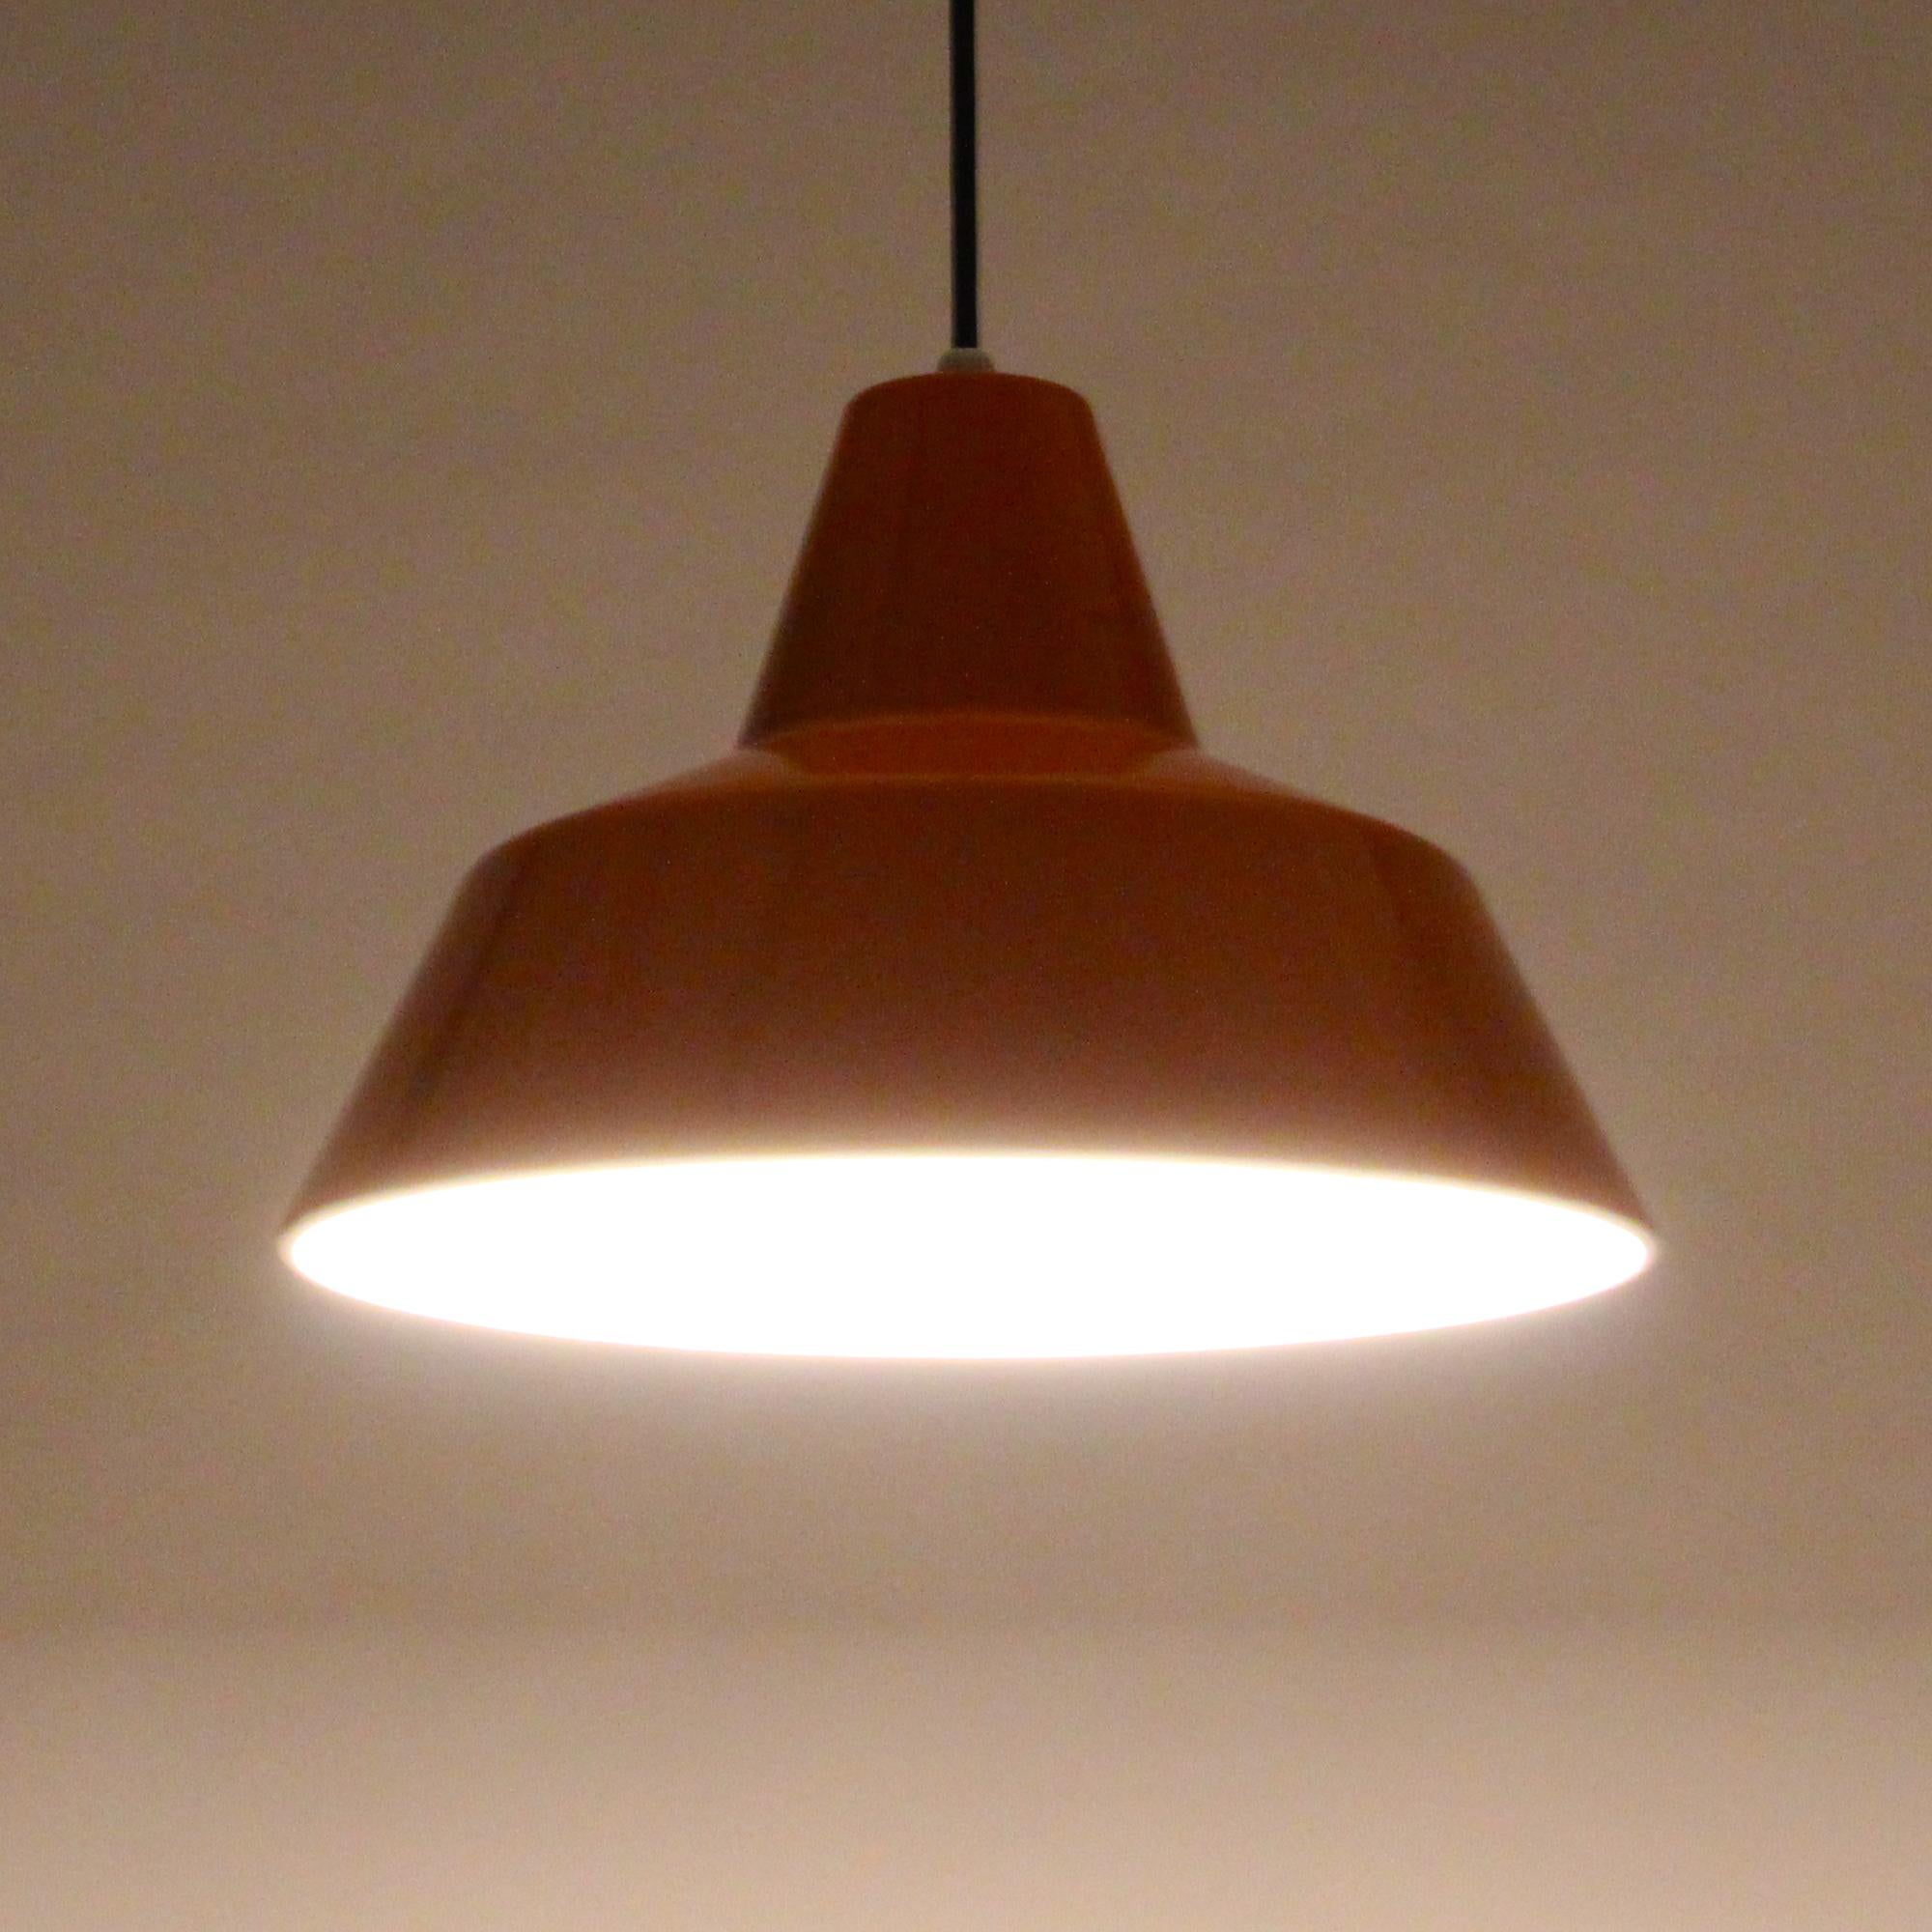 Enamel Pendant, Orange Danish Lamp by Louis Poulsen, 1960s, Large Workshop Light (Dänisch)